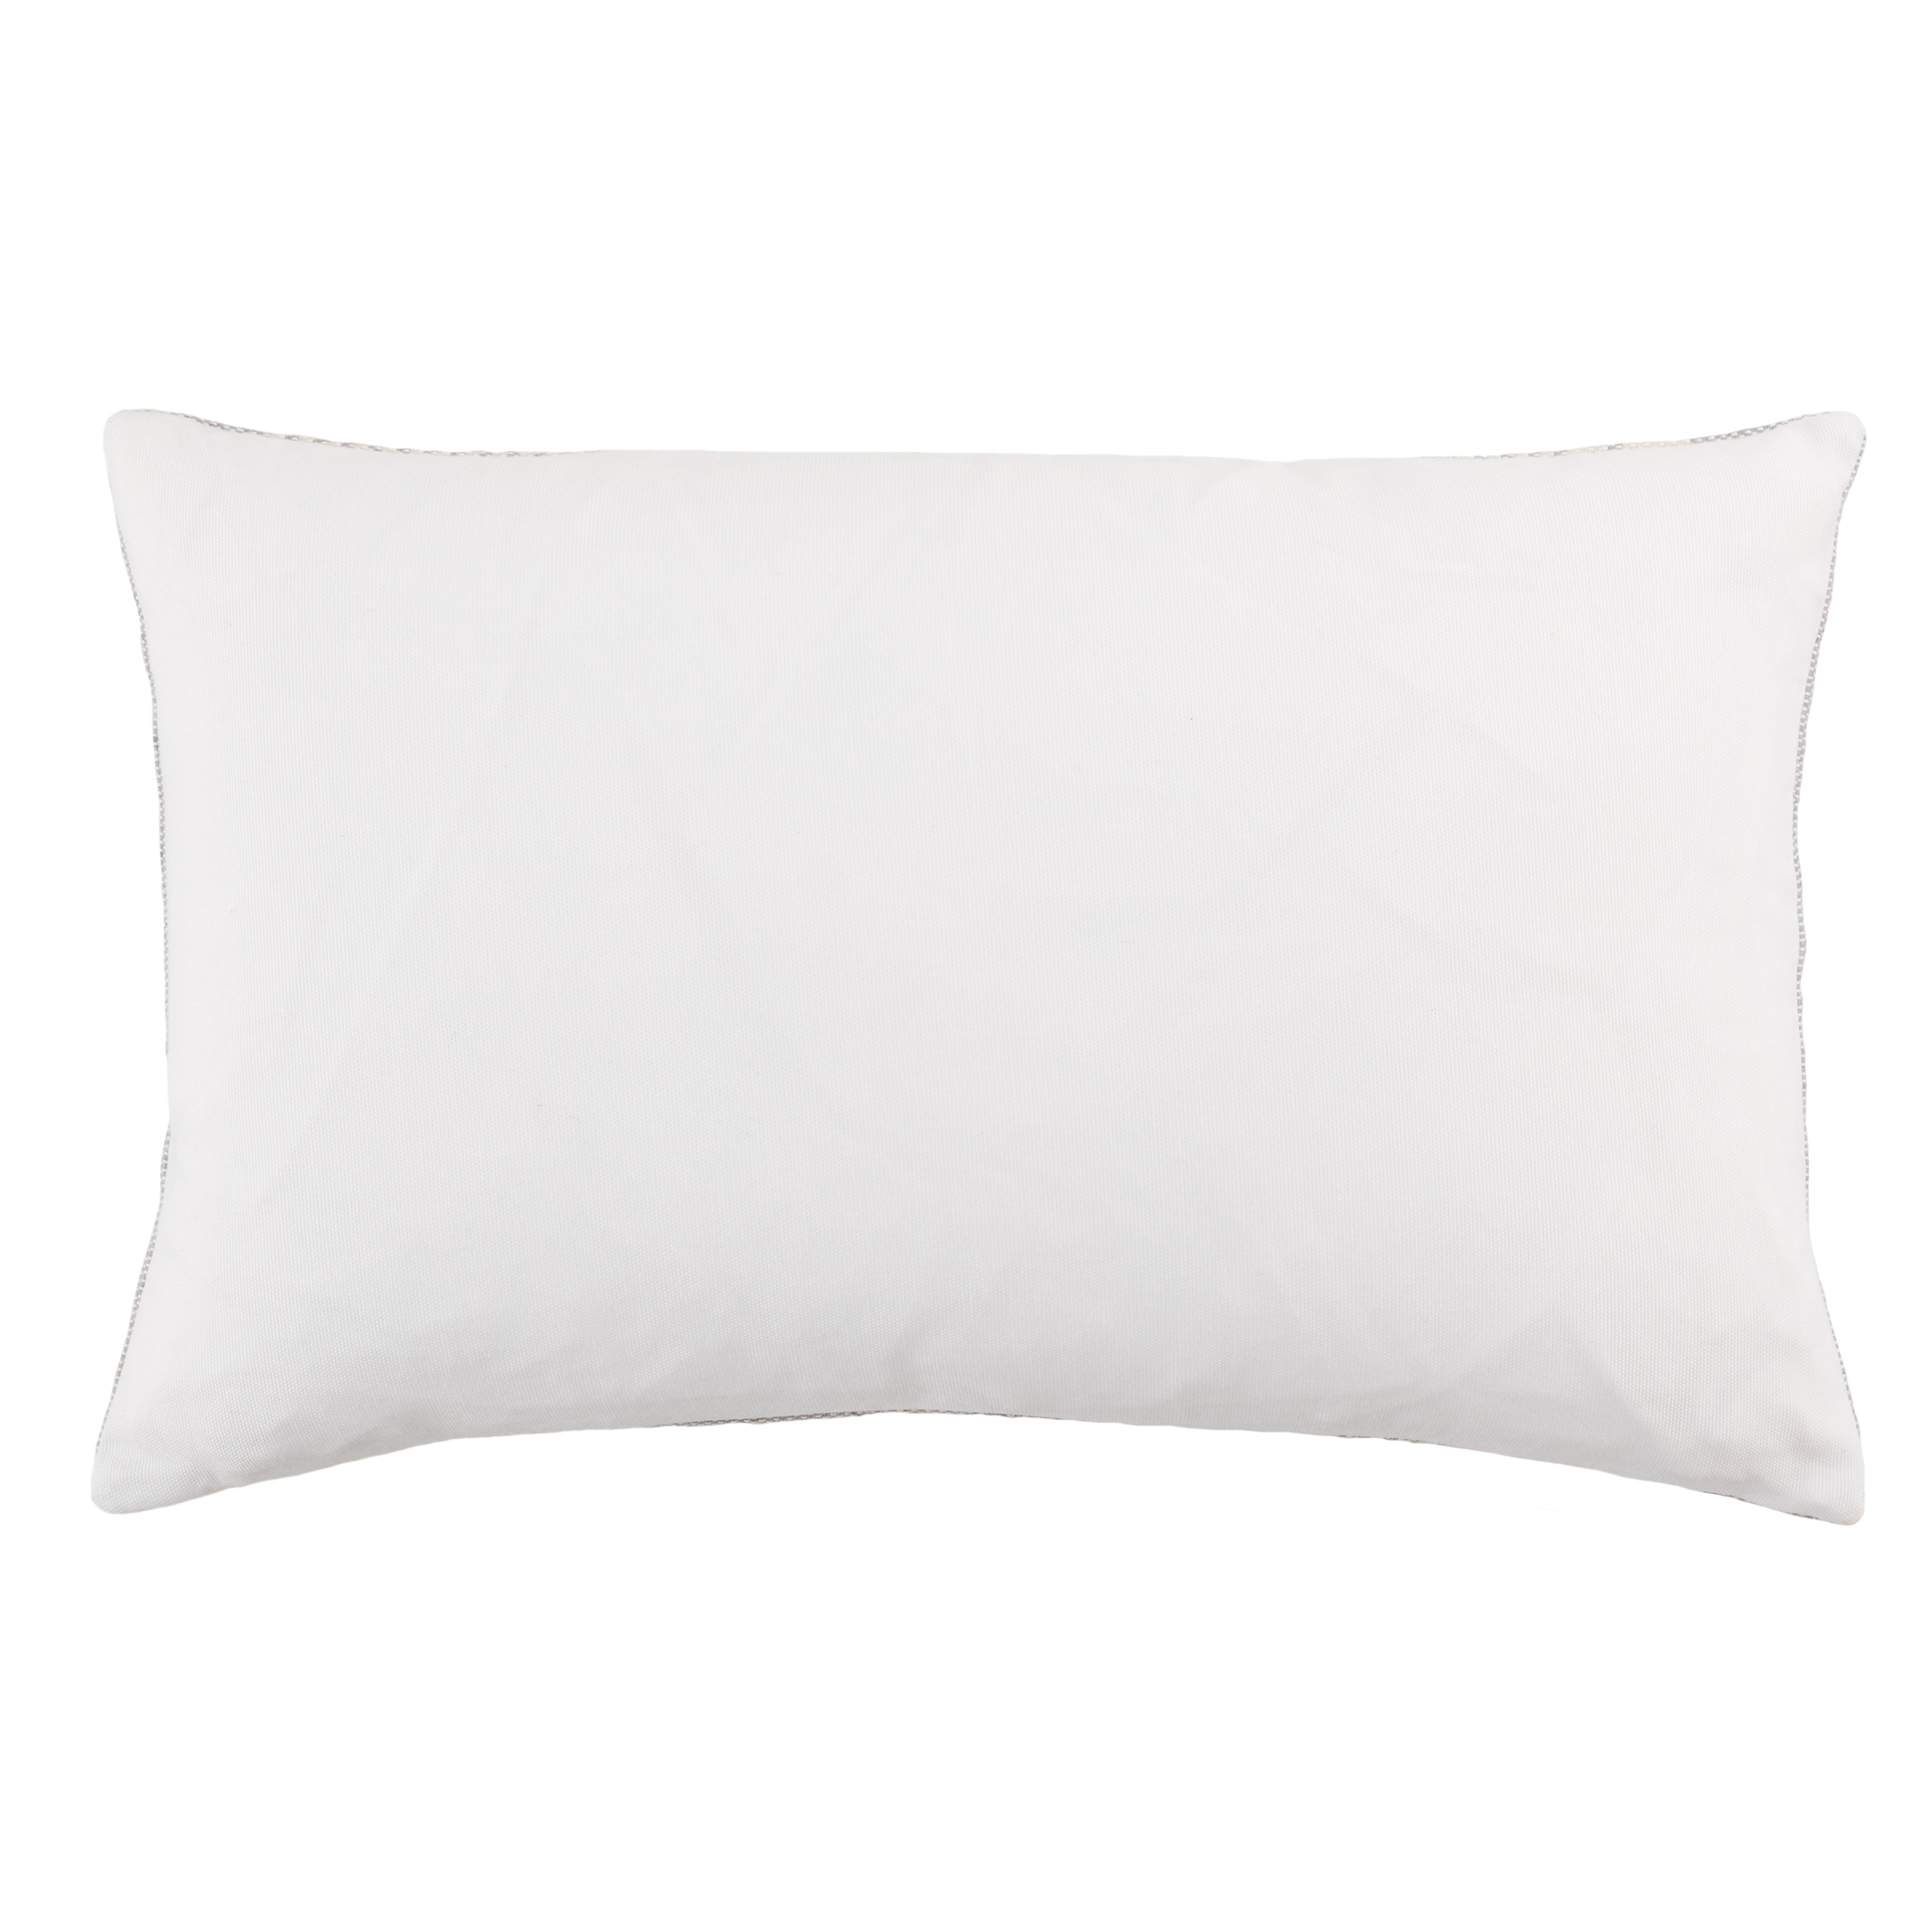 Carinda Lumbar Pillow, Gray, 21" x 13" - Image 1